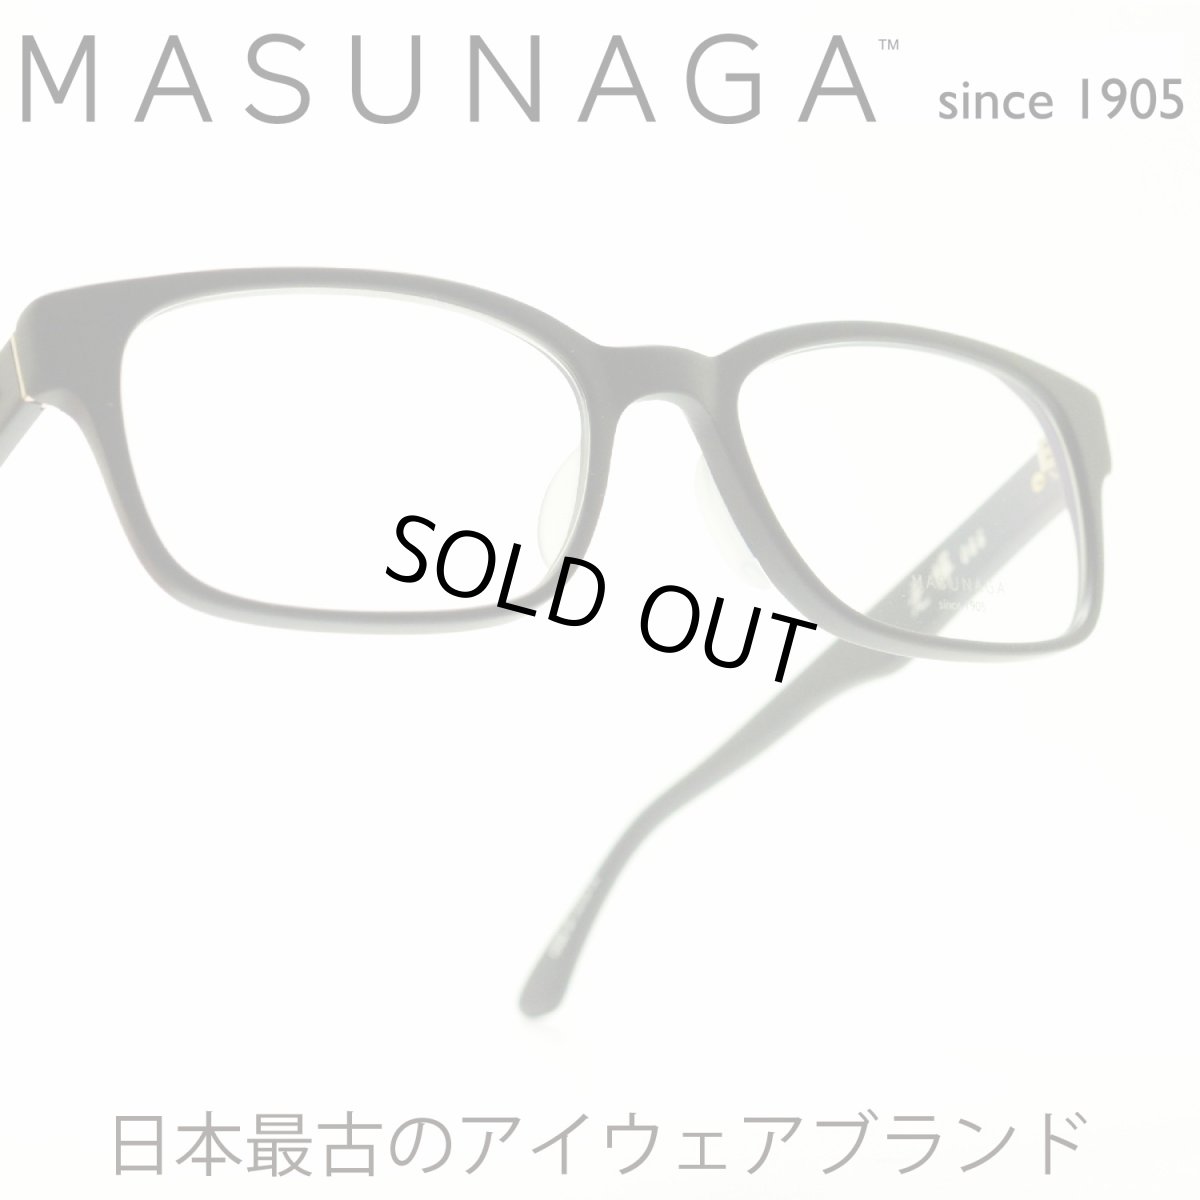 画像1: 増永眼鏡 MASUNAGA 光輝 066 col-19 BK Matt メガネ 眼鏡 めがね メンズ レディース おしゃれ ブランド 人気 おすすめ フレーム 流行り 度付き レンズ (1)